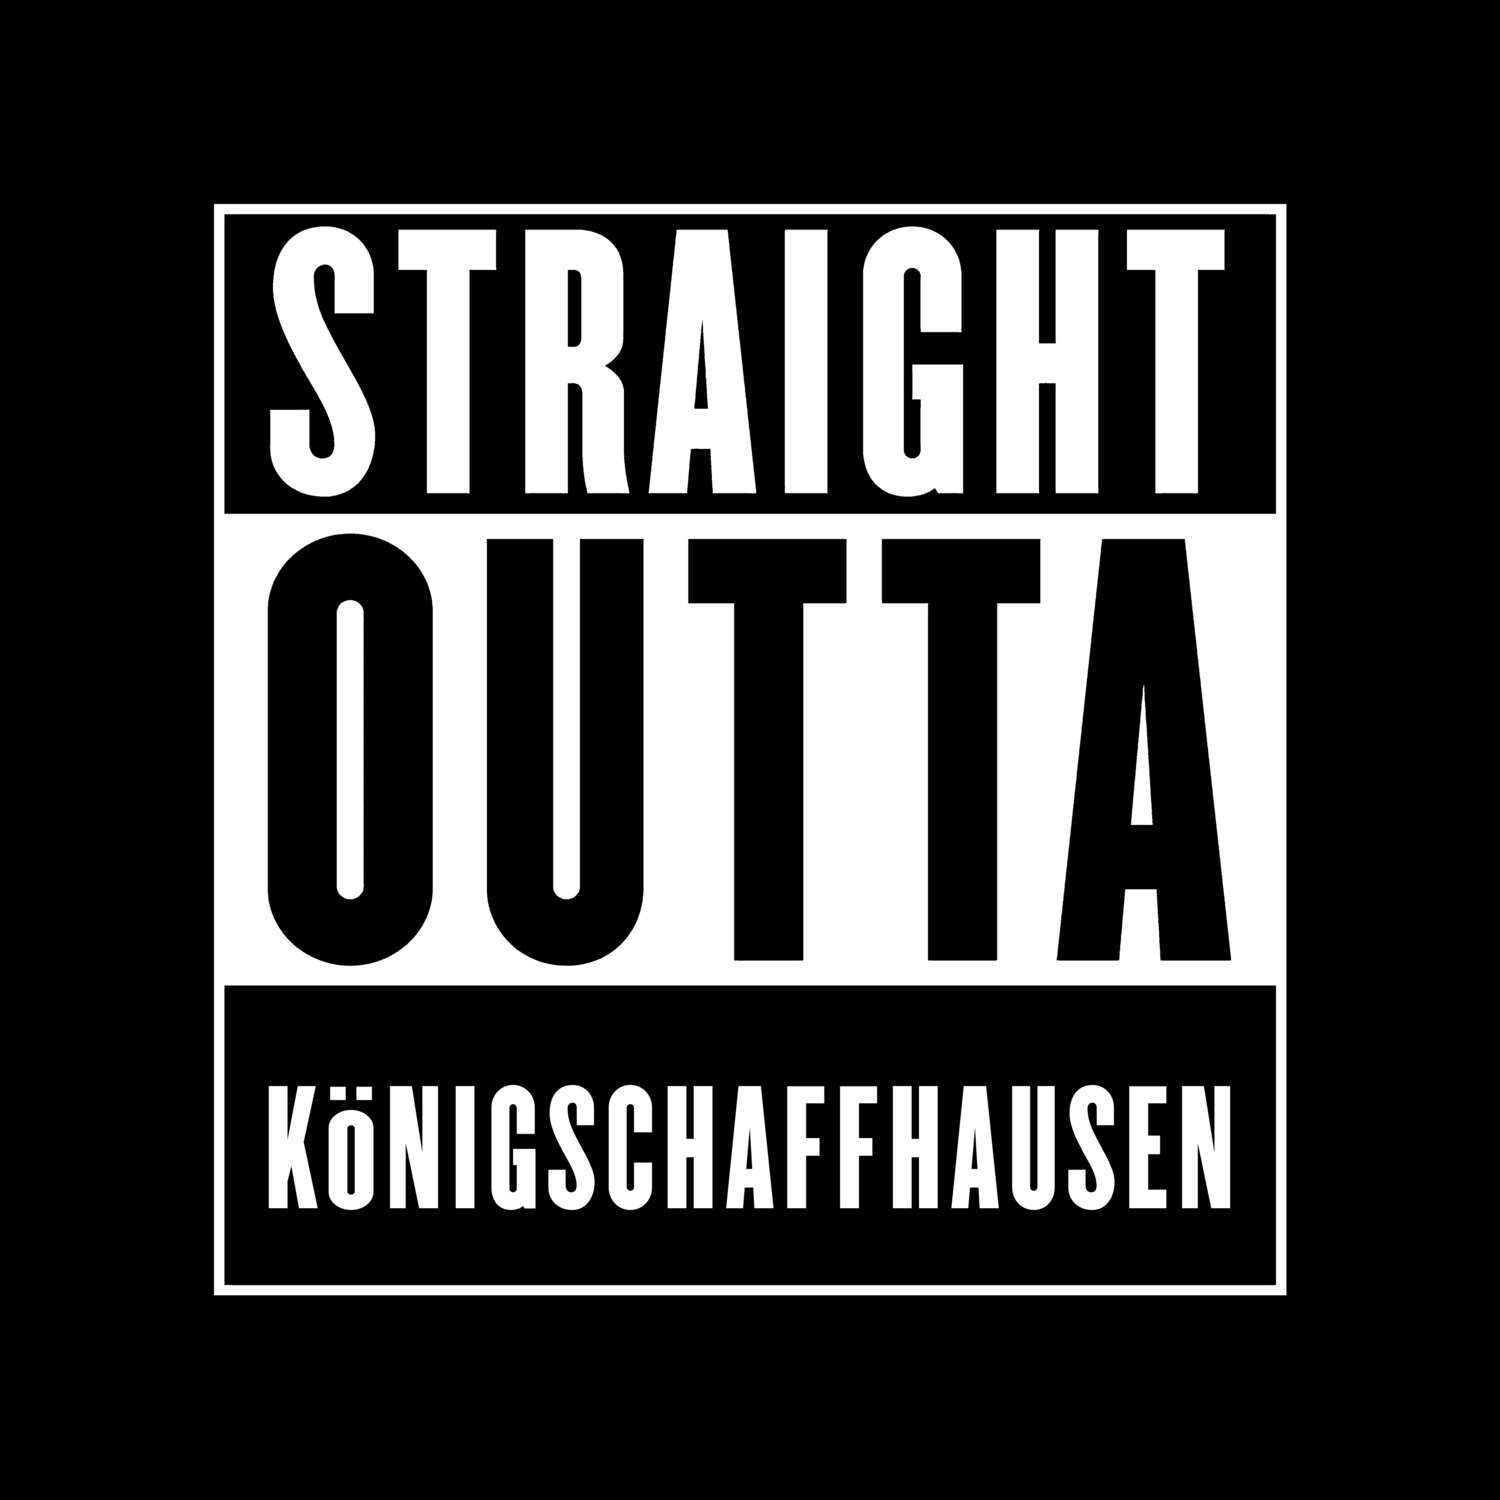 Königschaffhausen T-Shirt »Straight Outta«